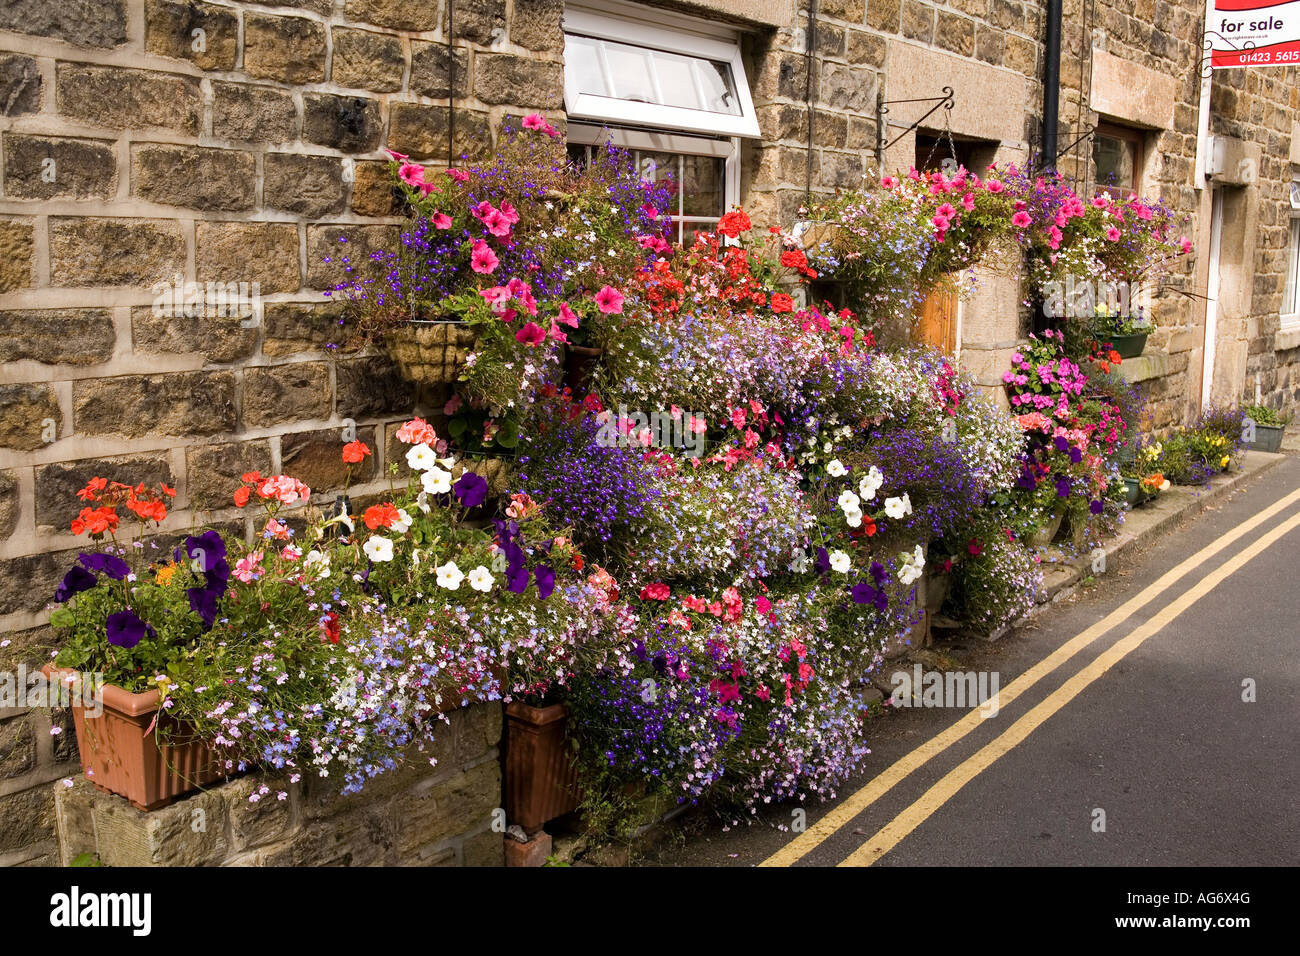 UK Yorkshire Nidderdale Pateley Bridge Church Street floral display of ...